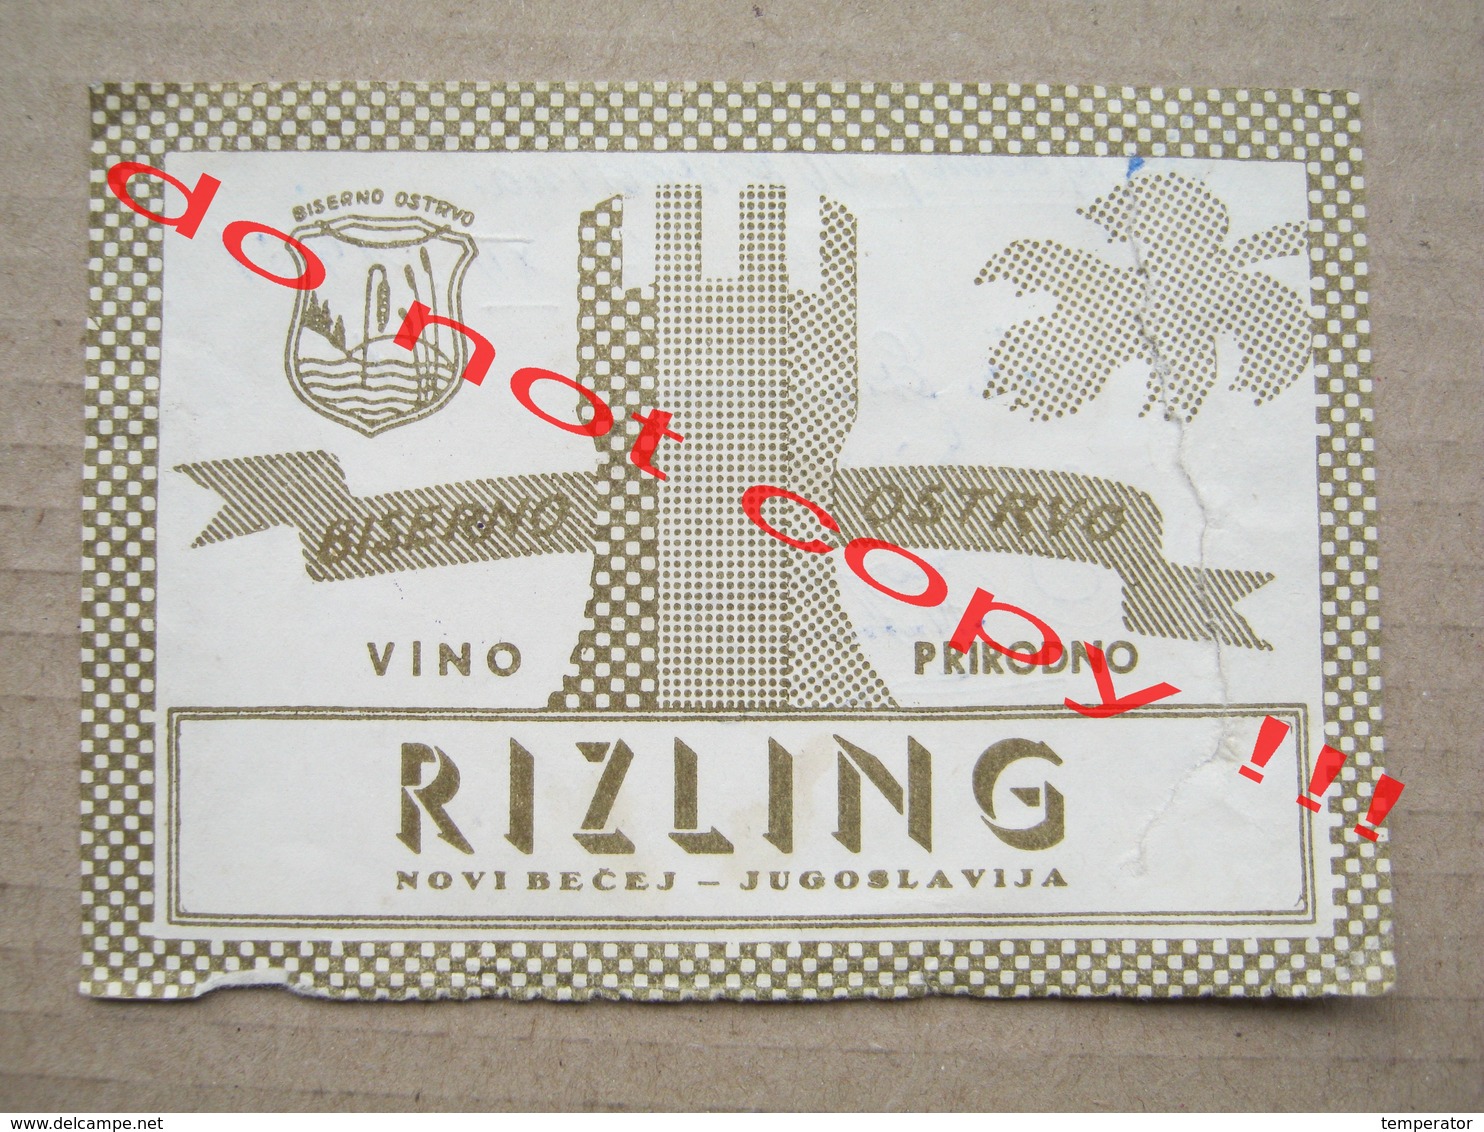 Yugoslavia, Serbia / RIZLING - Biserno Ostrvo Novi Bečej / Old Label ( 1961 ) - Riesling